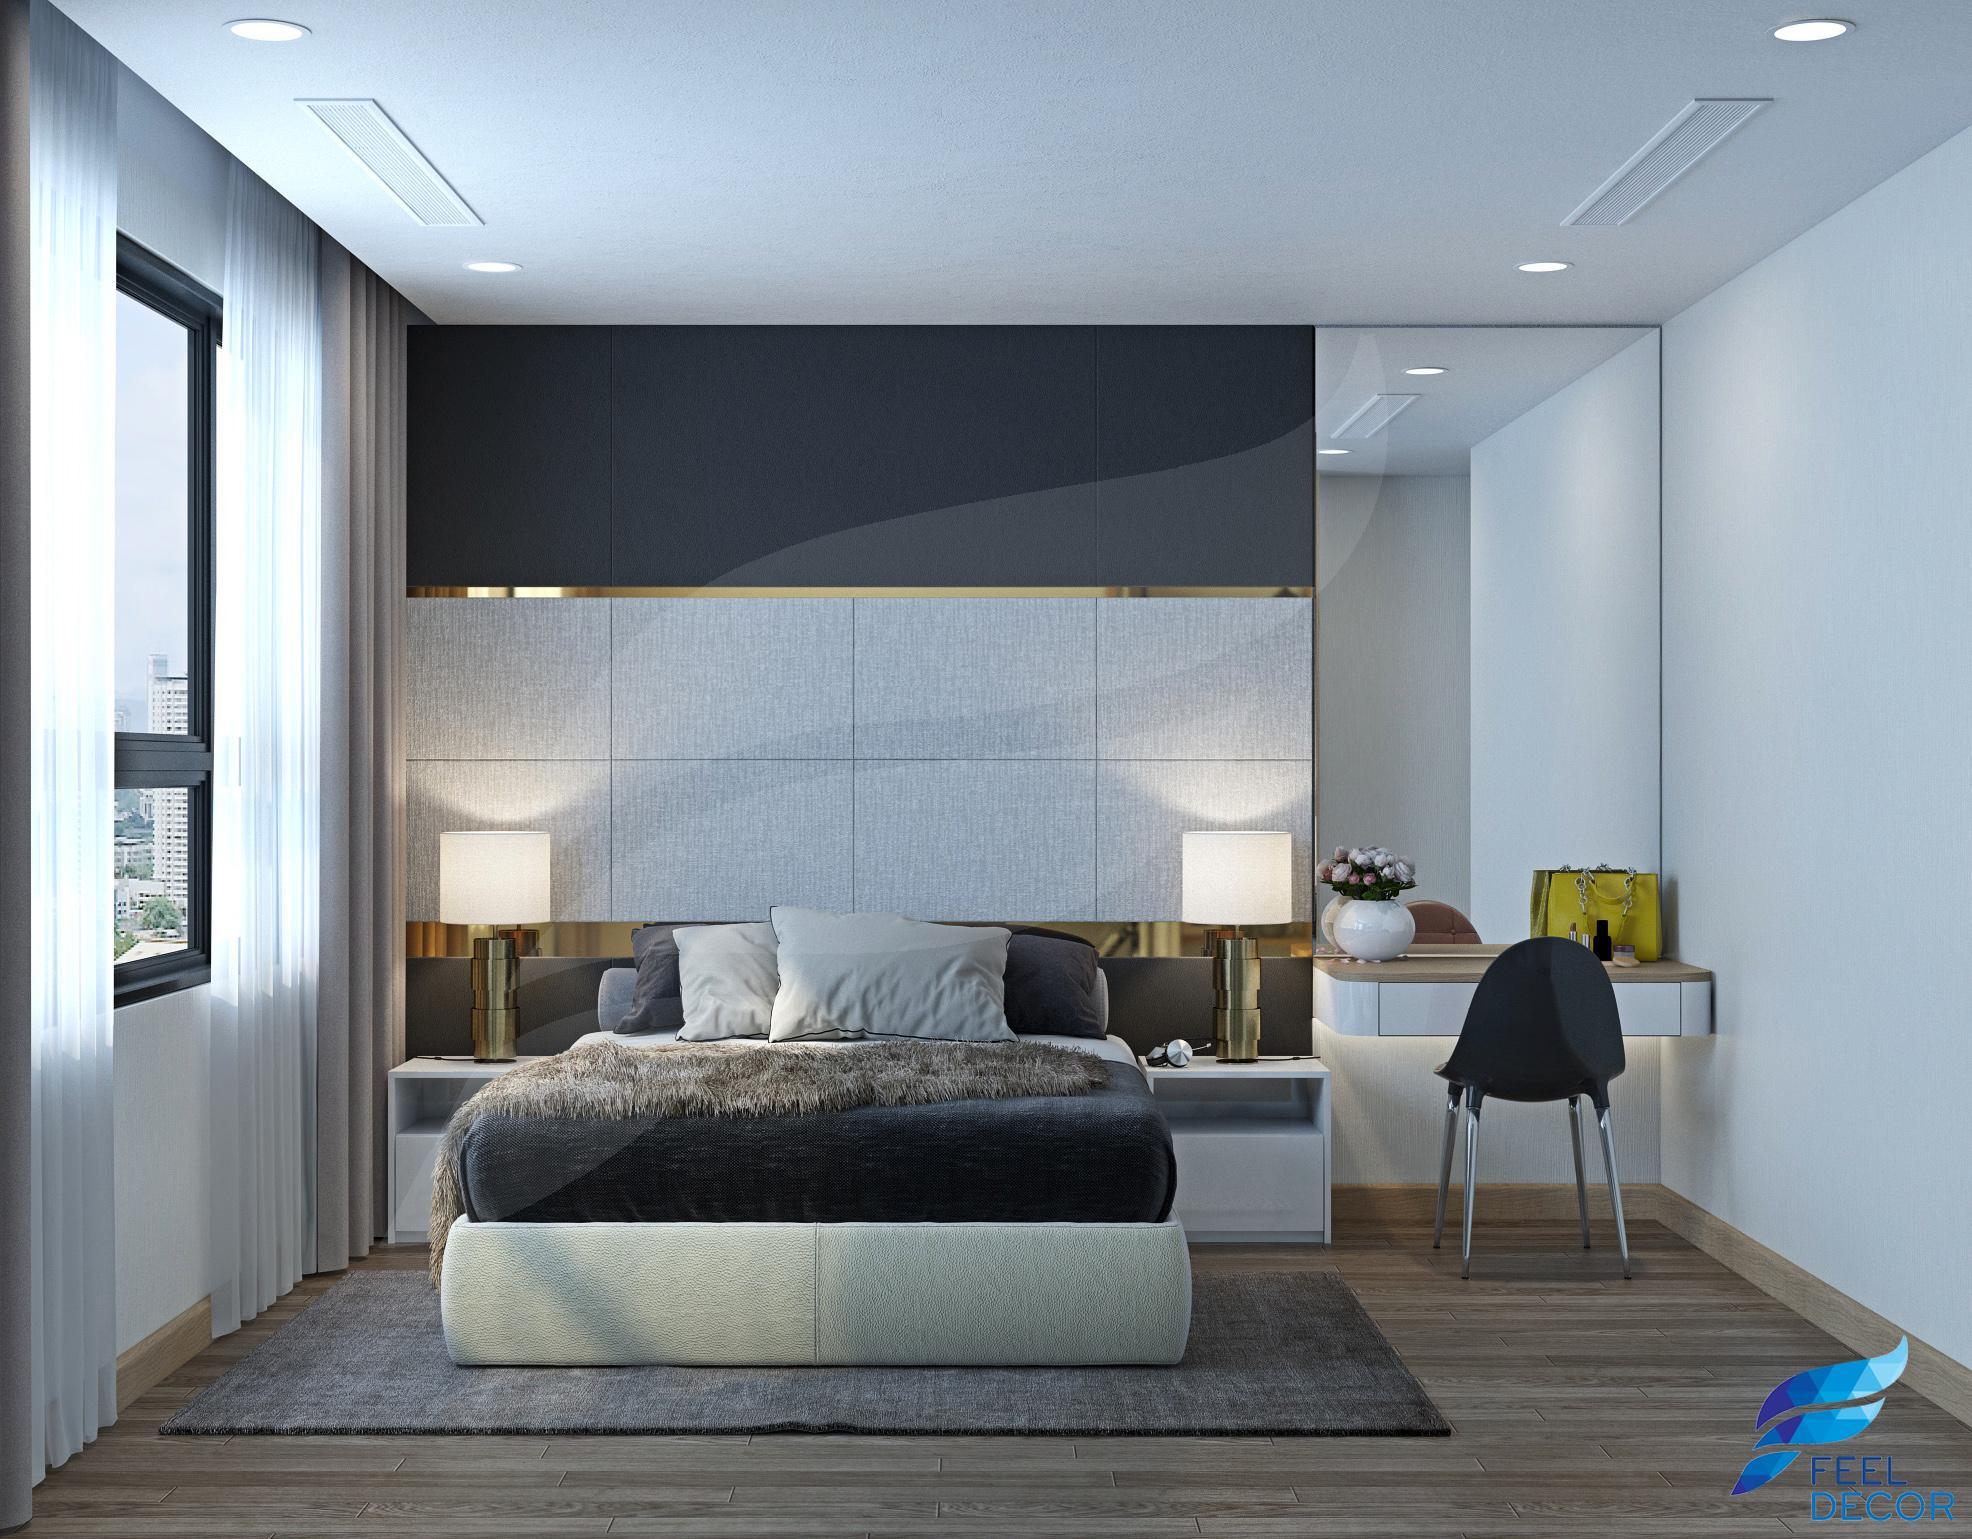 thiết kế nội thất căn hộ 3 phòng ngủ rộng 143m2 chung cư Vinhomes Central Park